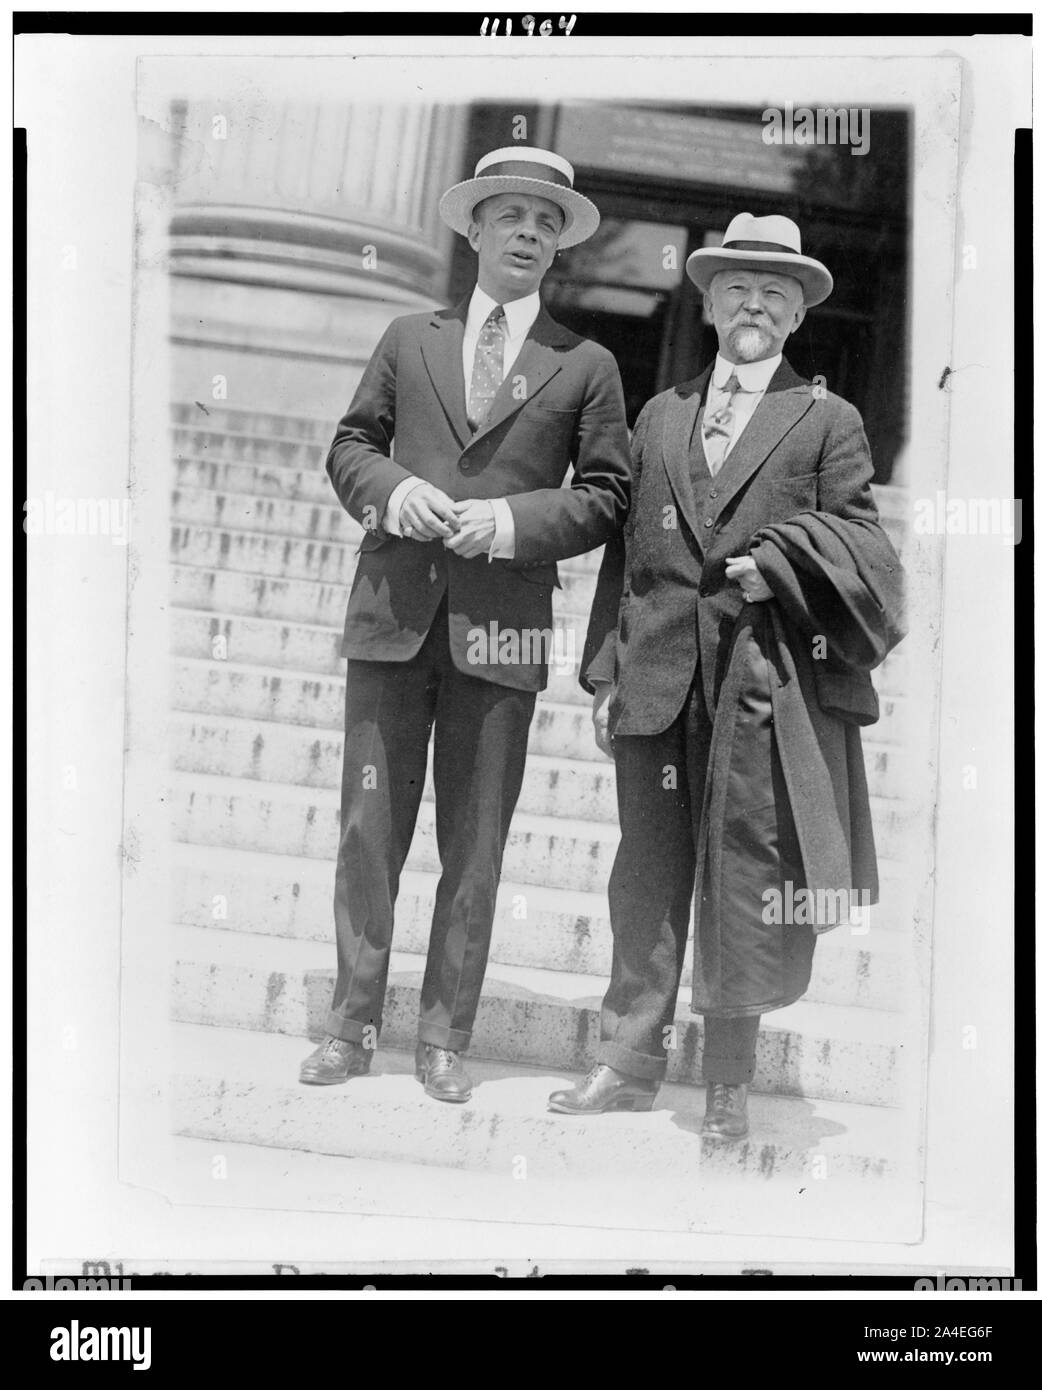 Theodore Roosevelt, Jr. auf Schritte mit Charles Lathrop Pack, volle Länge Porträts Stockfoto